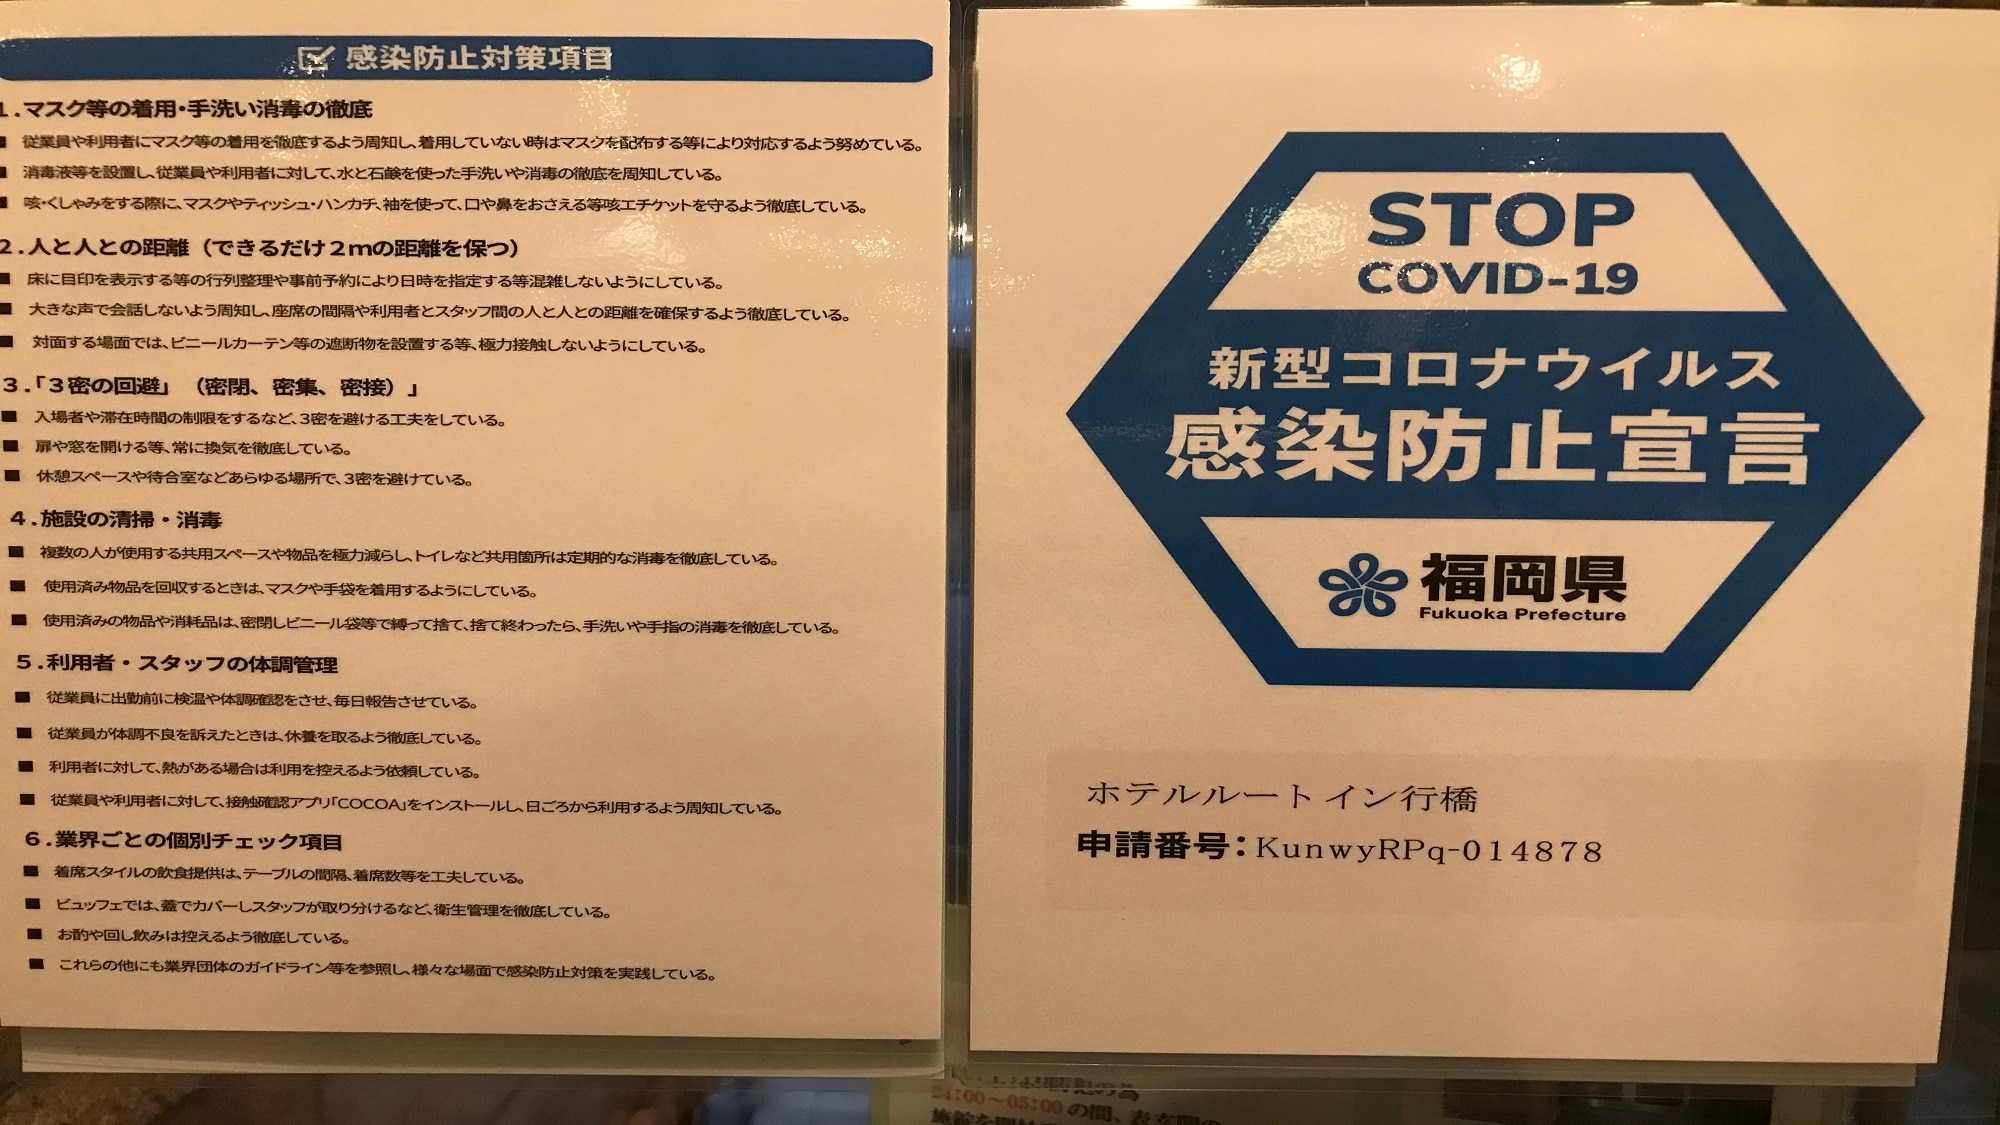 당 호텔은 후쿠오카현의 신형 코로나 바이러스 감염 방지 대책을 실시하고 있습니다.